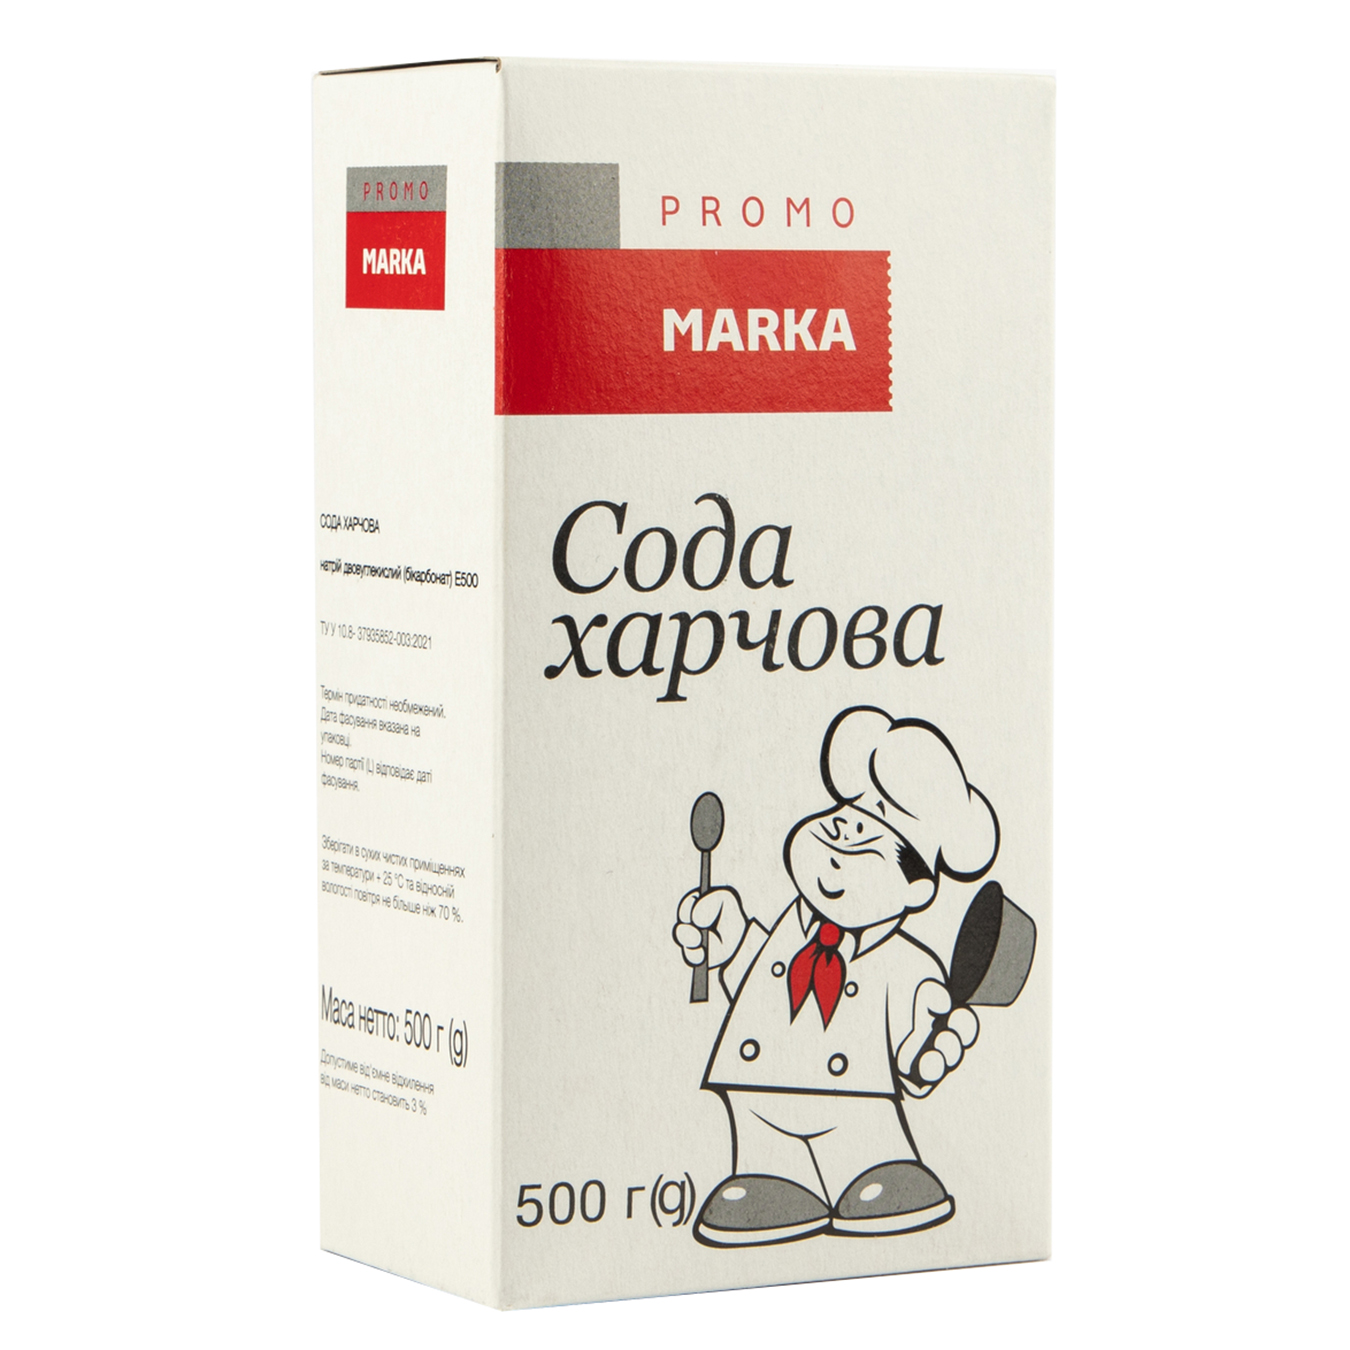 Baking soda Marka Promo cardboard 500g 3